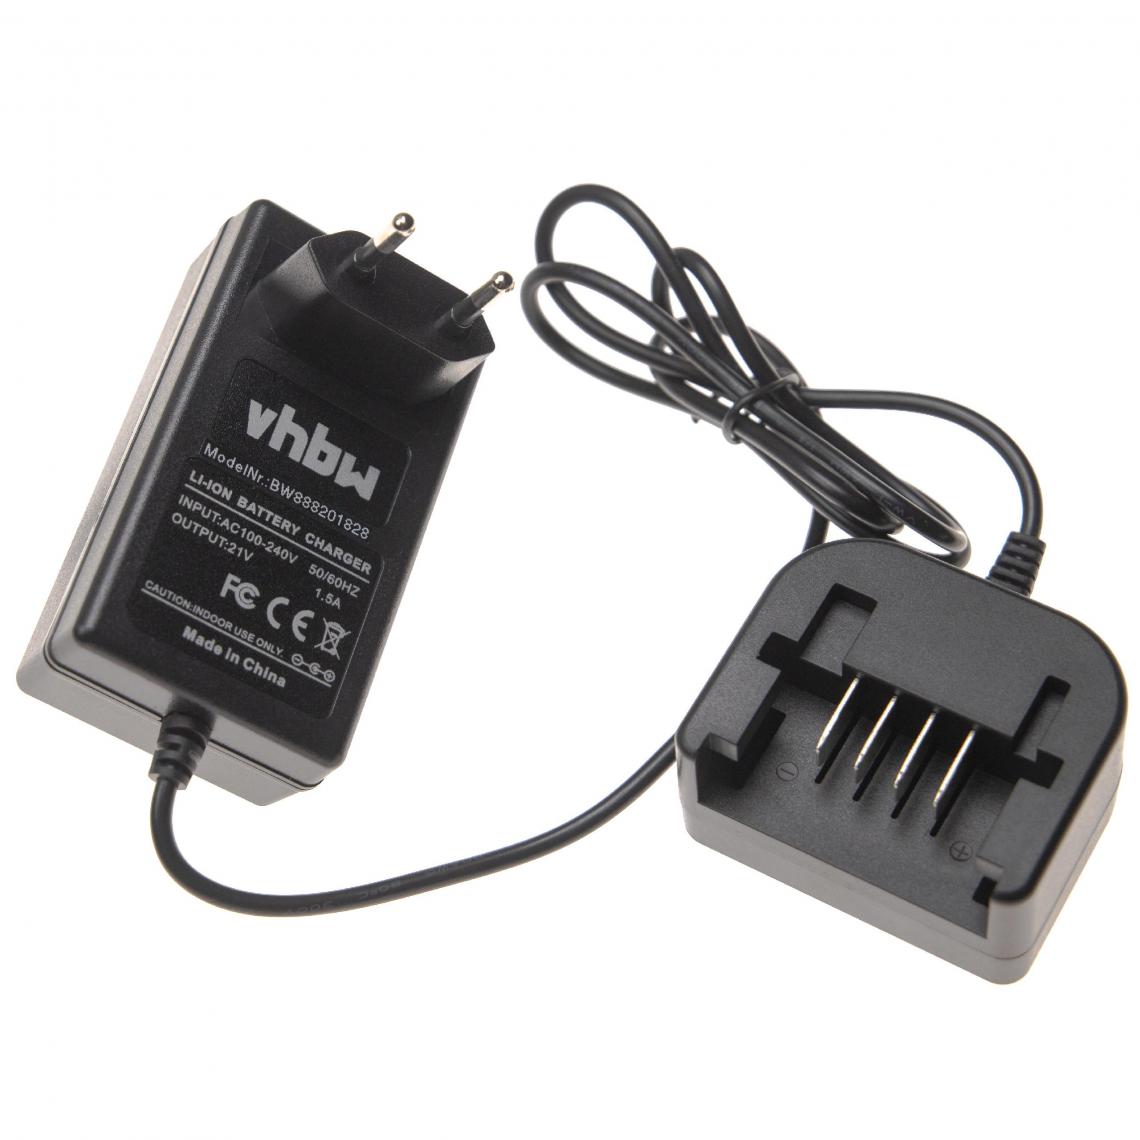 Vhbw - vhbw Chargeur compatible avec Worx WG629E.1, WG629E.9, WG629E.91, WG778E, WG778E.1, WG779, WG894E, WG894E.5 batteries Li-ion d'outils (20V) - Clouterie